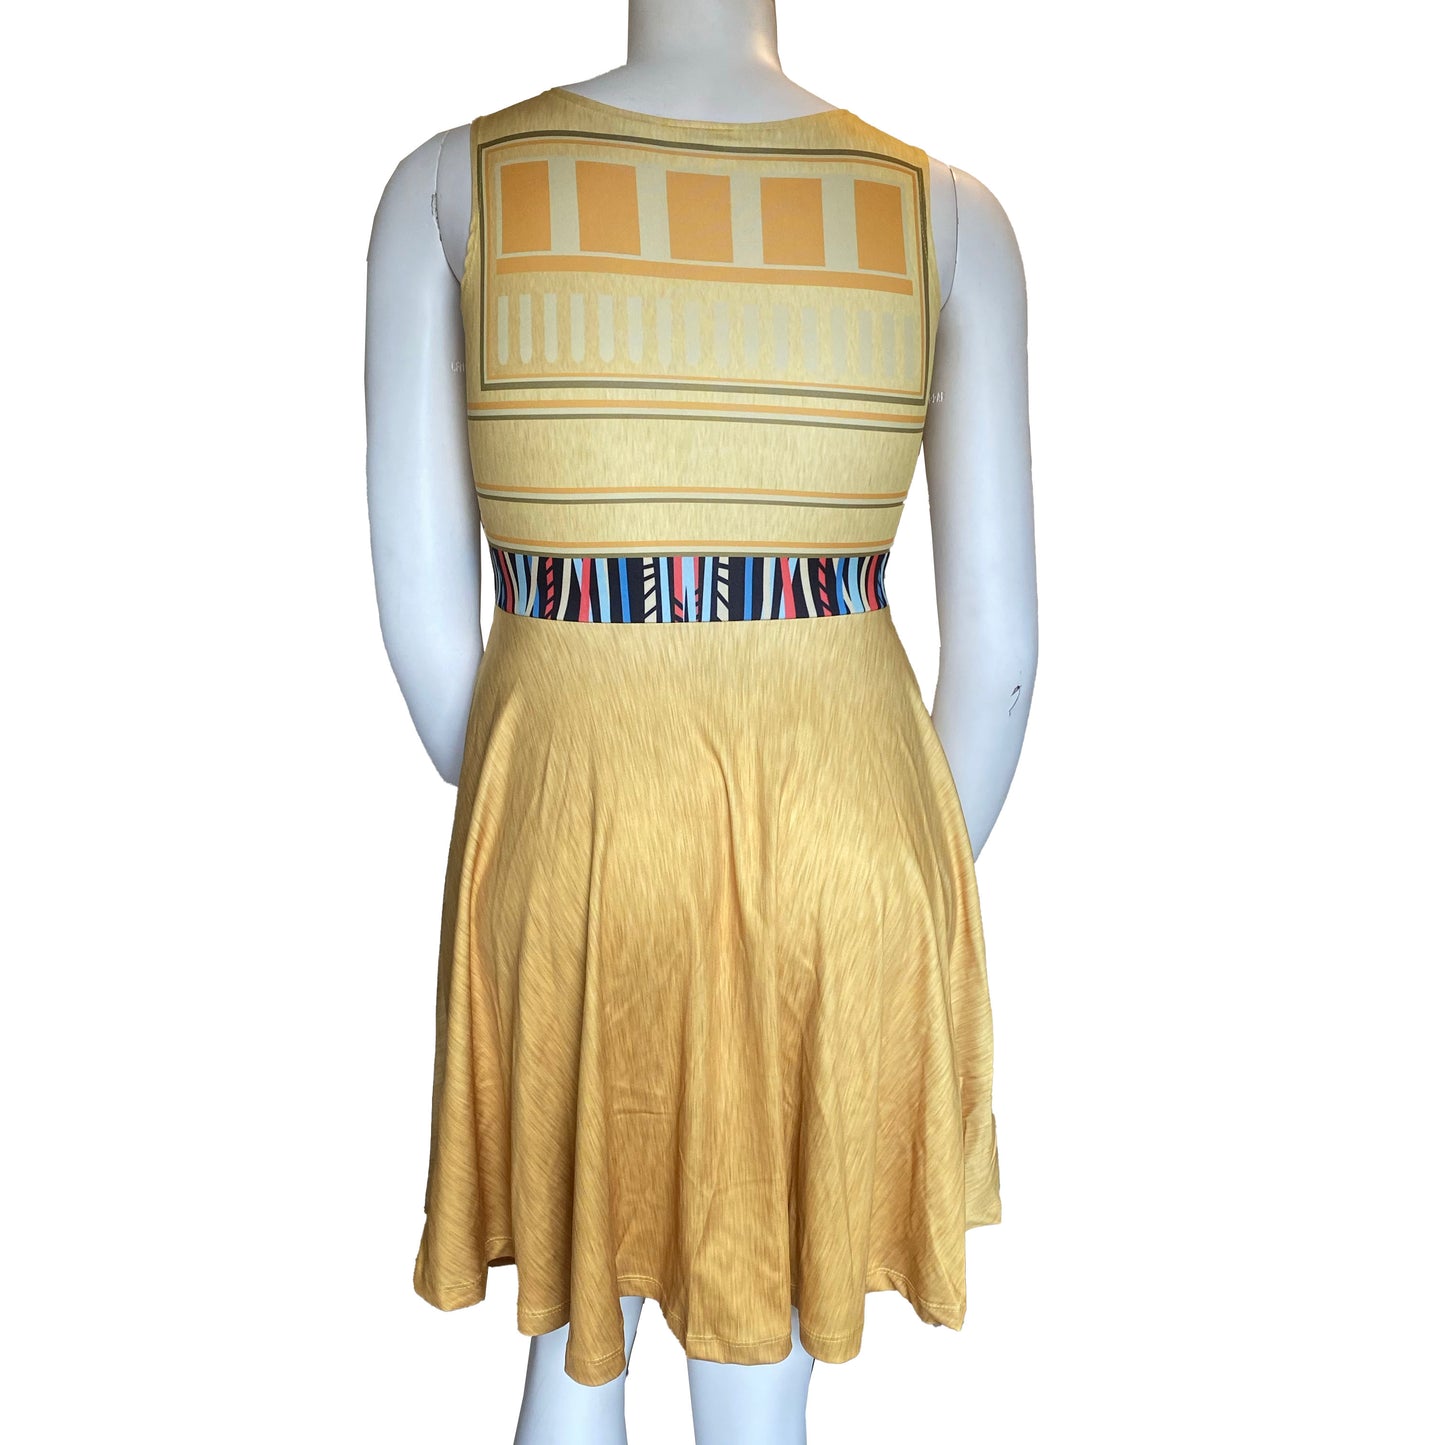 C3PO Inspired Skater Dress